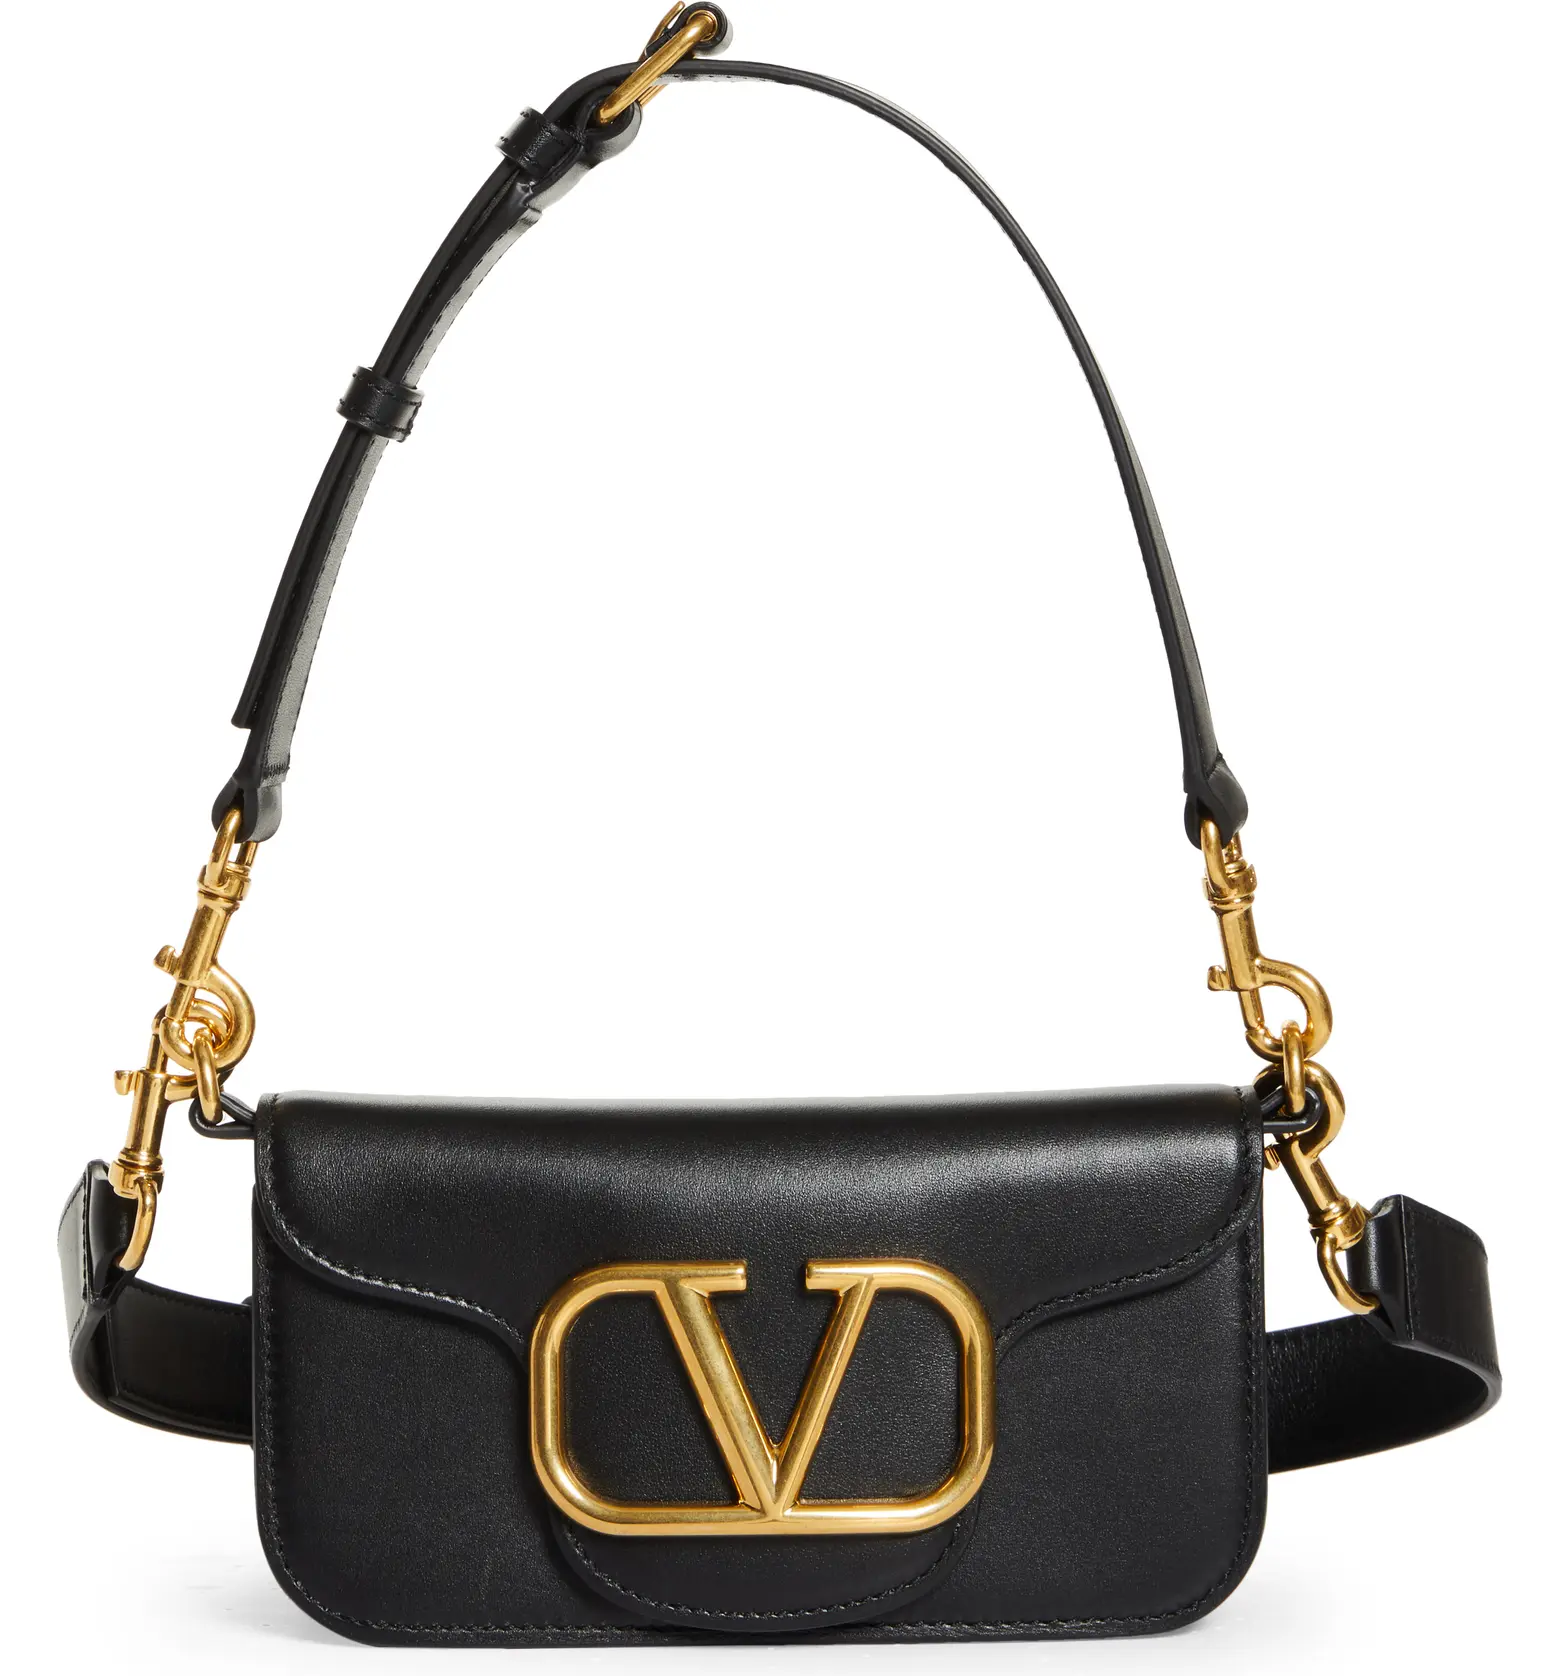 handbag - black handbag small and compact